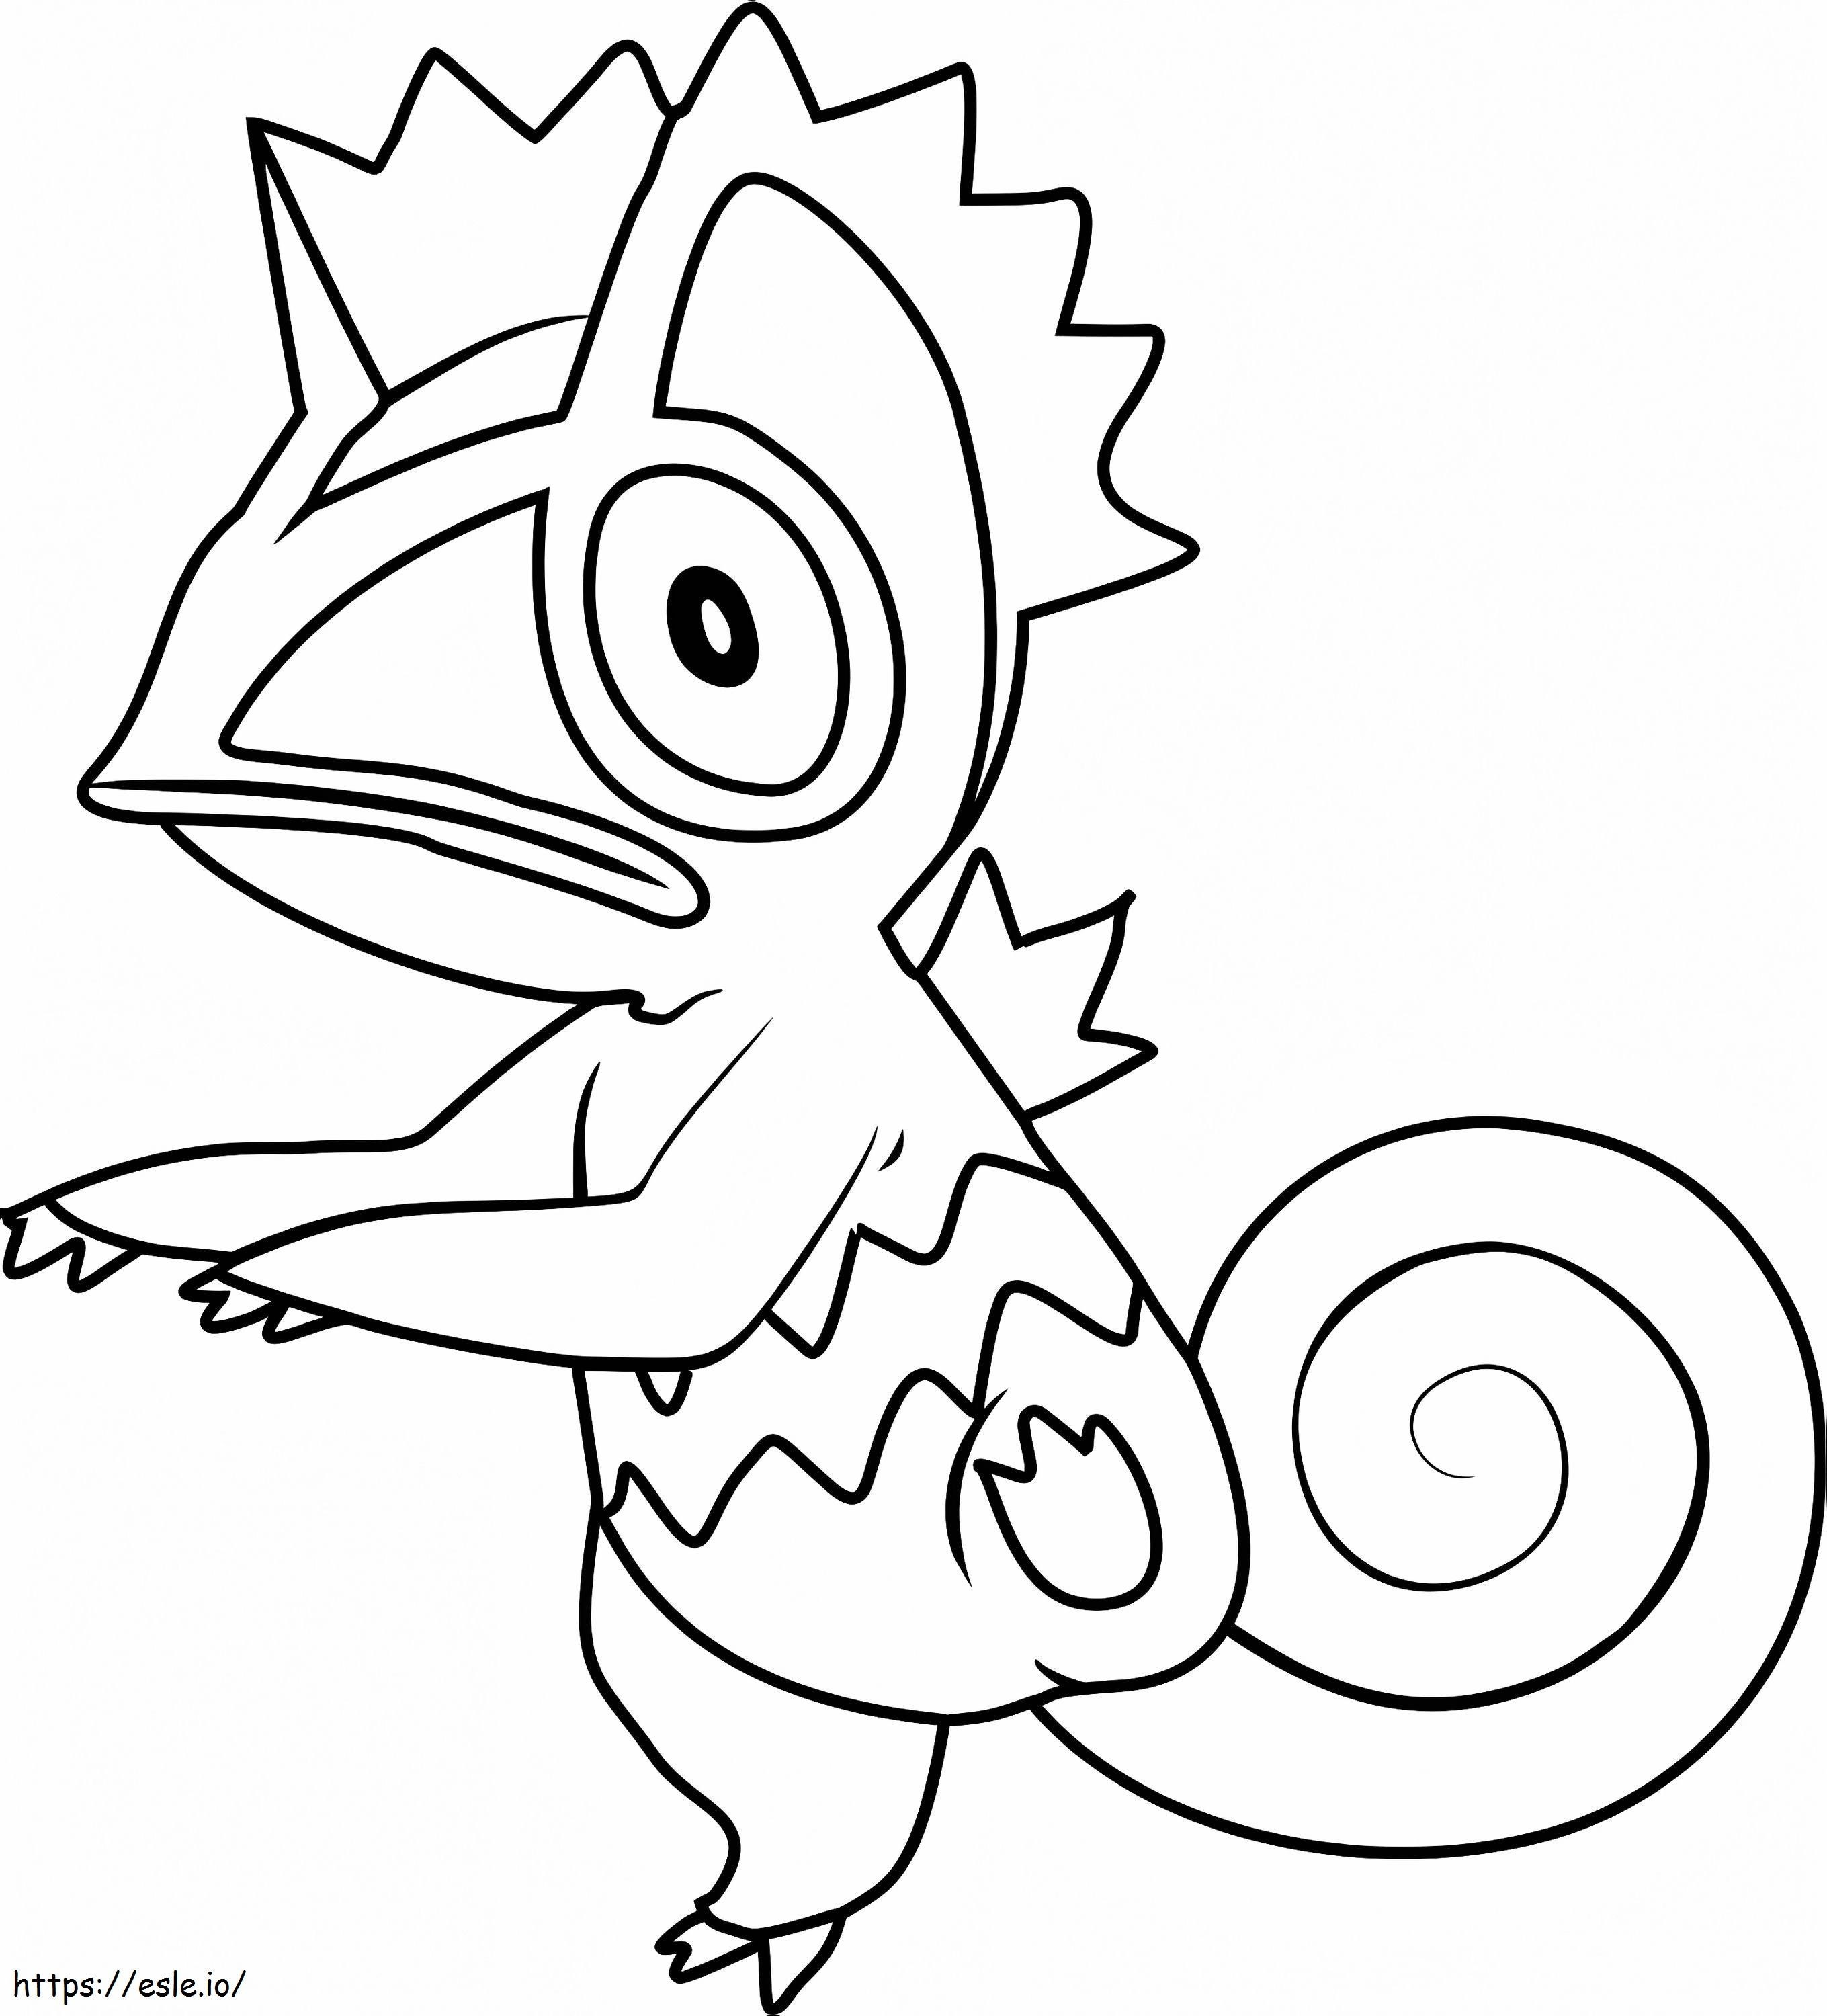 Coloriage Pokémon Kecléon à imprimer dessin